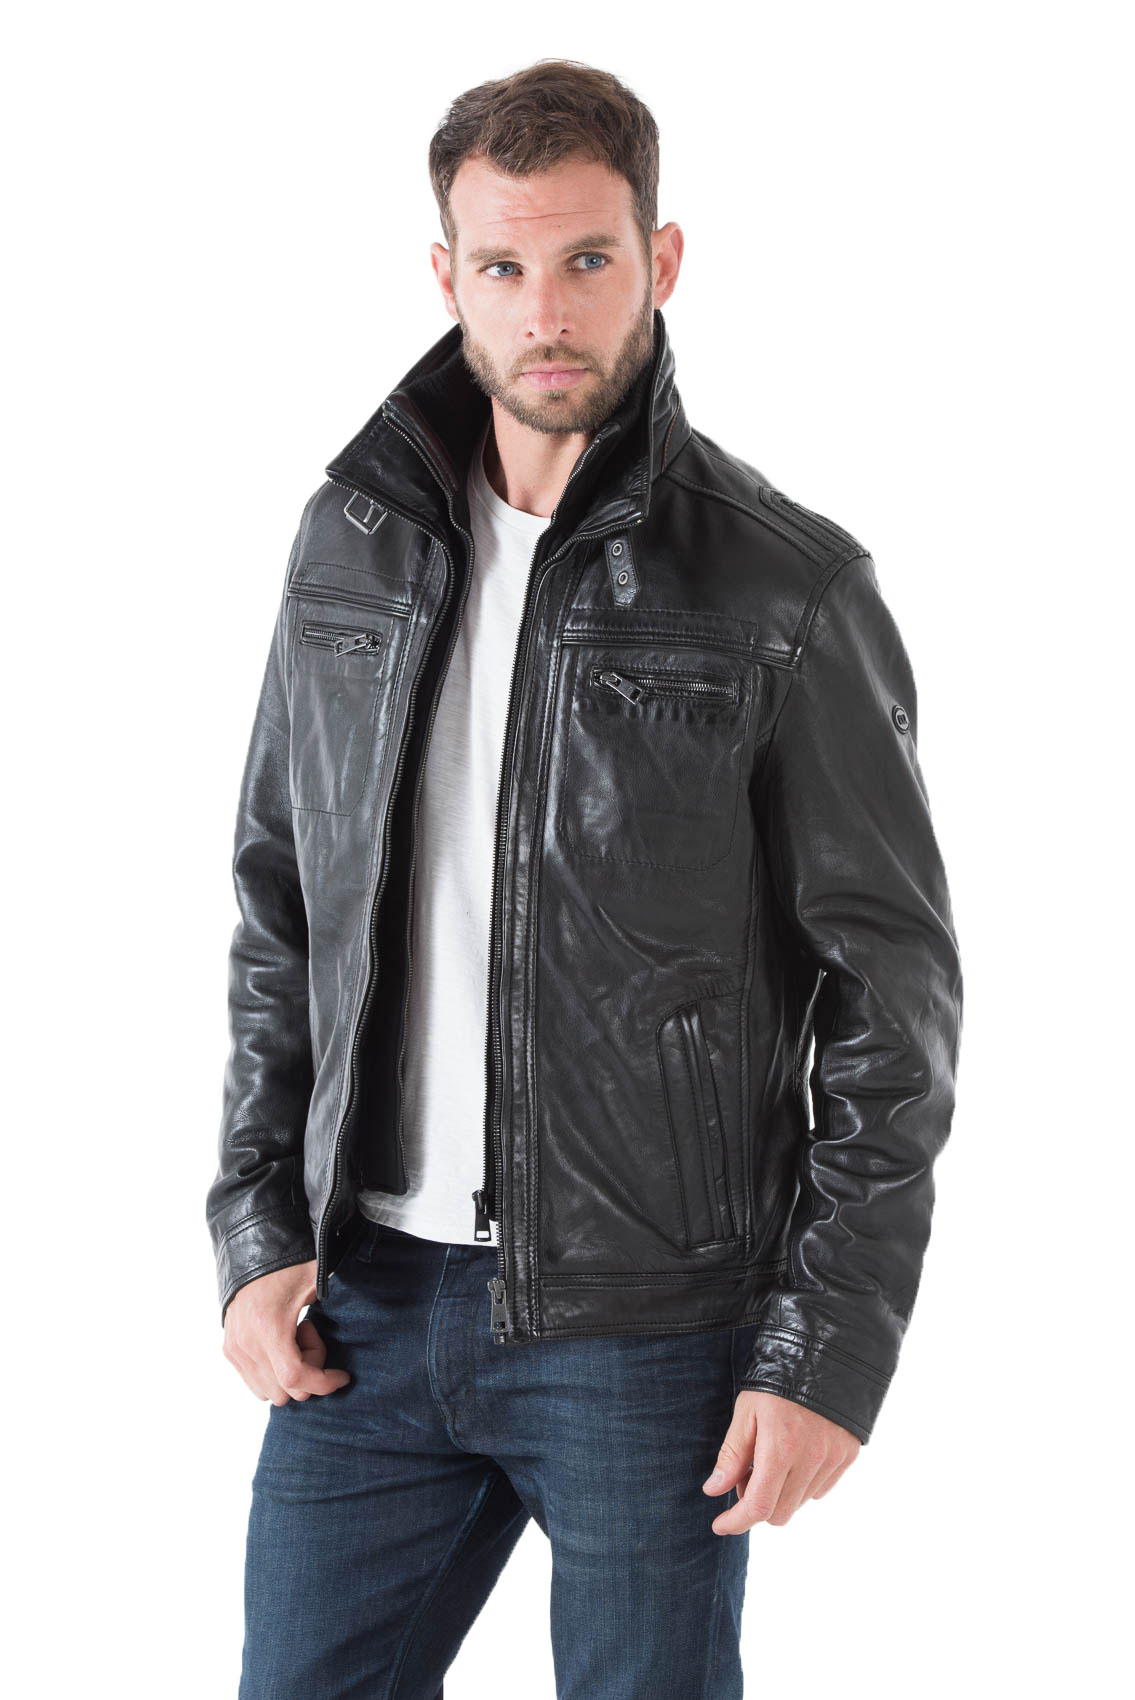 Blouson cuir homme noir 51704 classique col chemise couvrant ouatiné hiver face